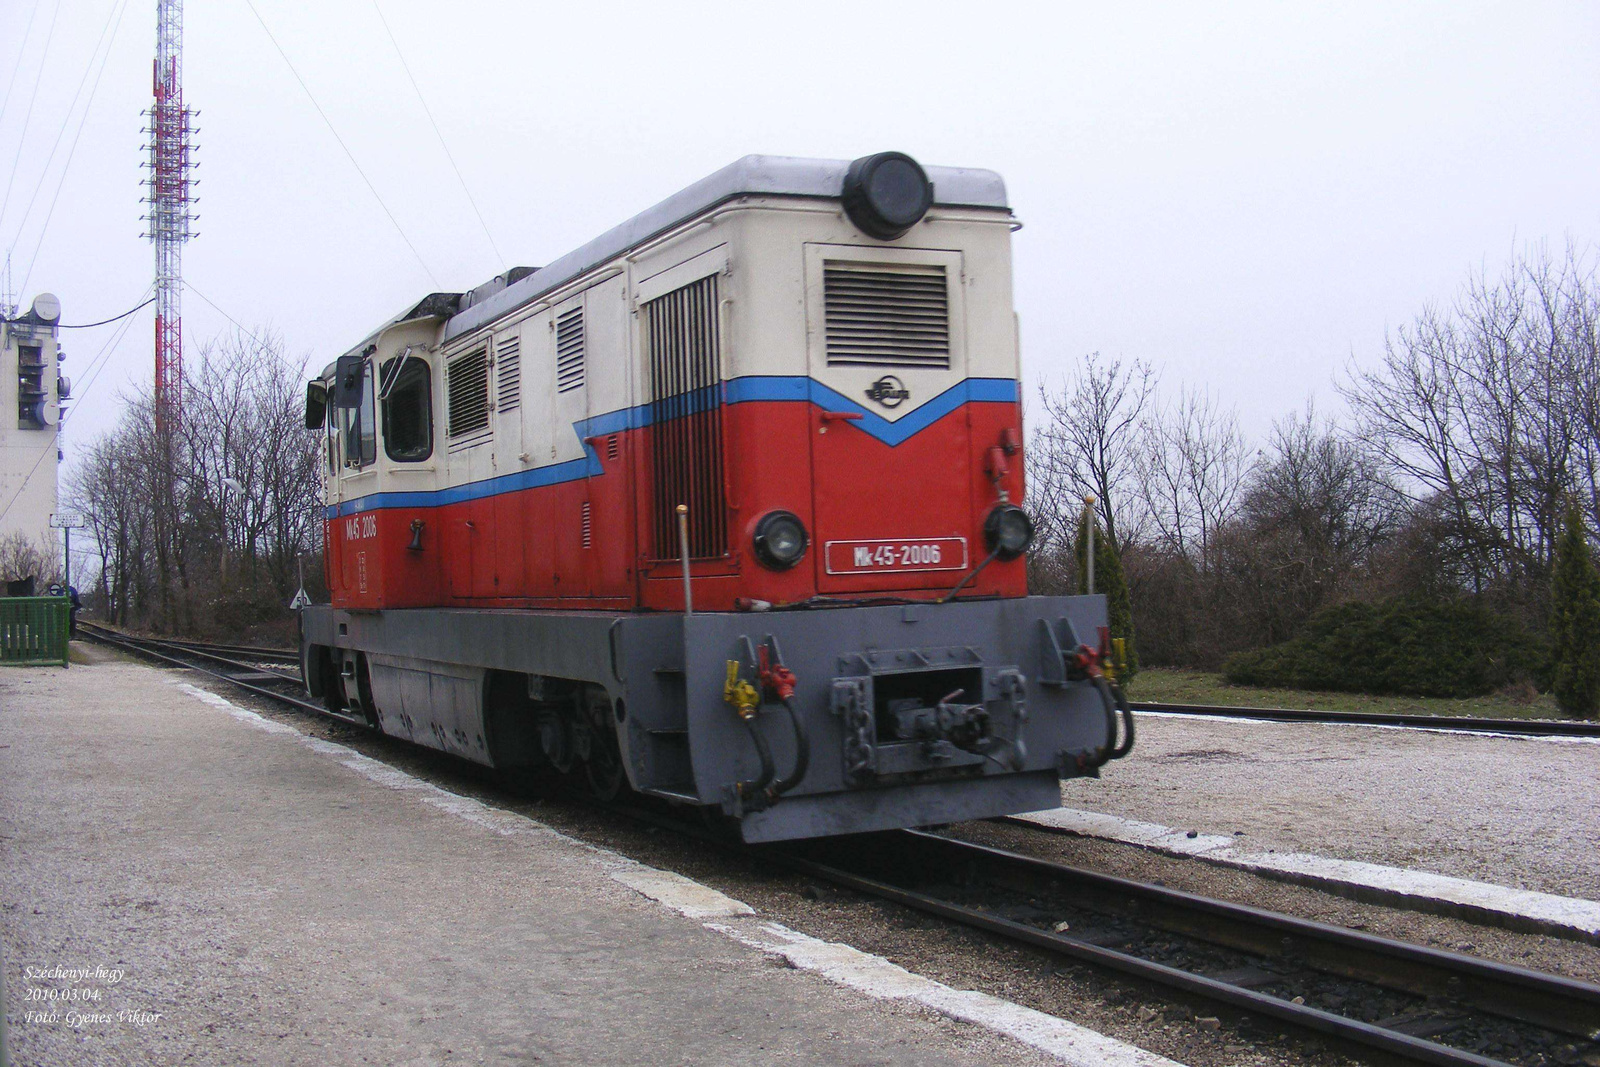 Mk45-2006 2